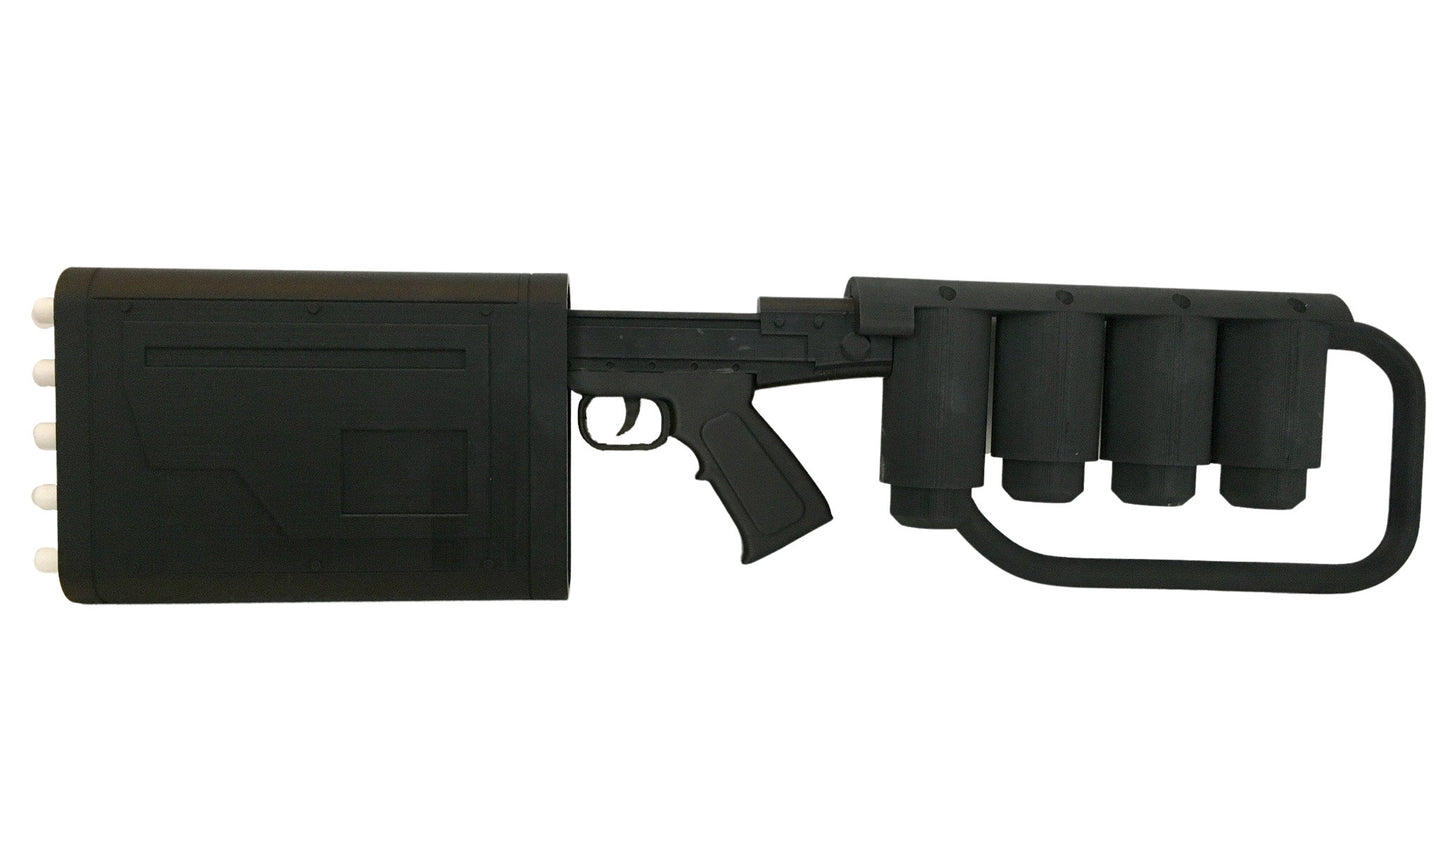 EMP GUN - Superhero Prop - 3D Printed Replica